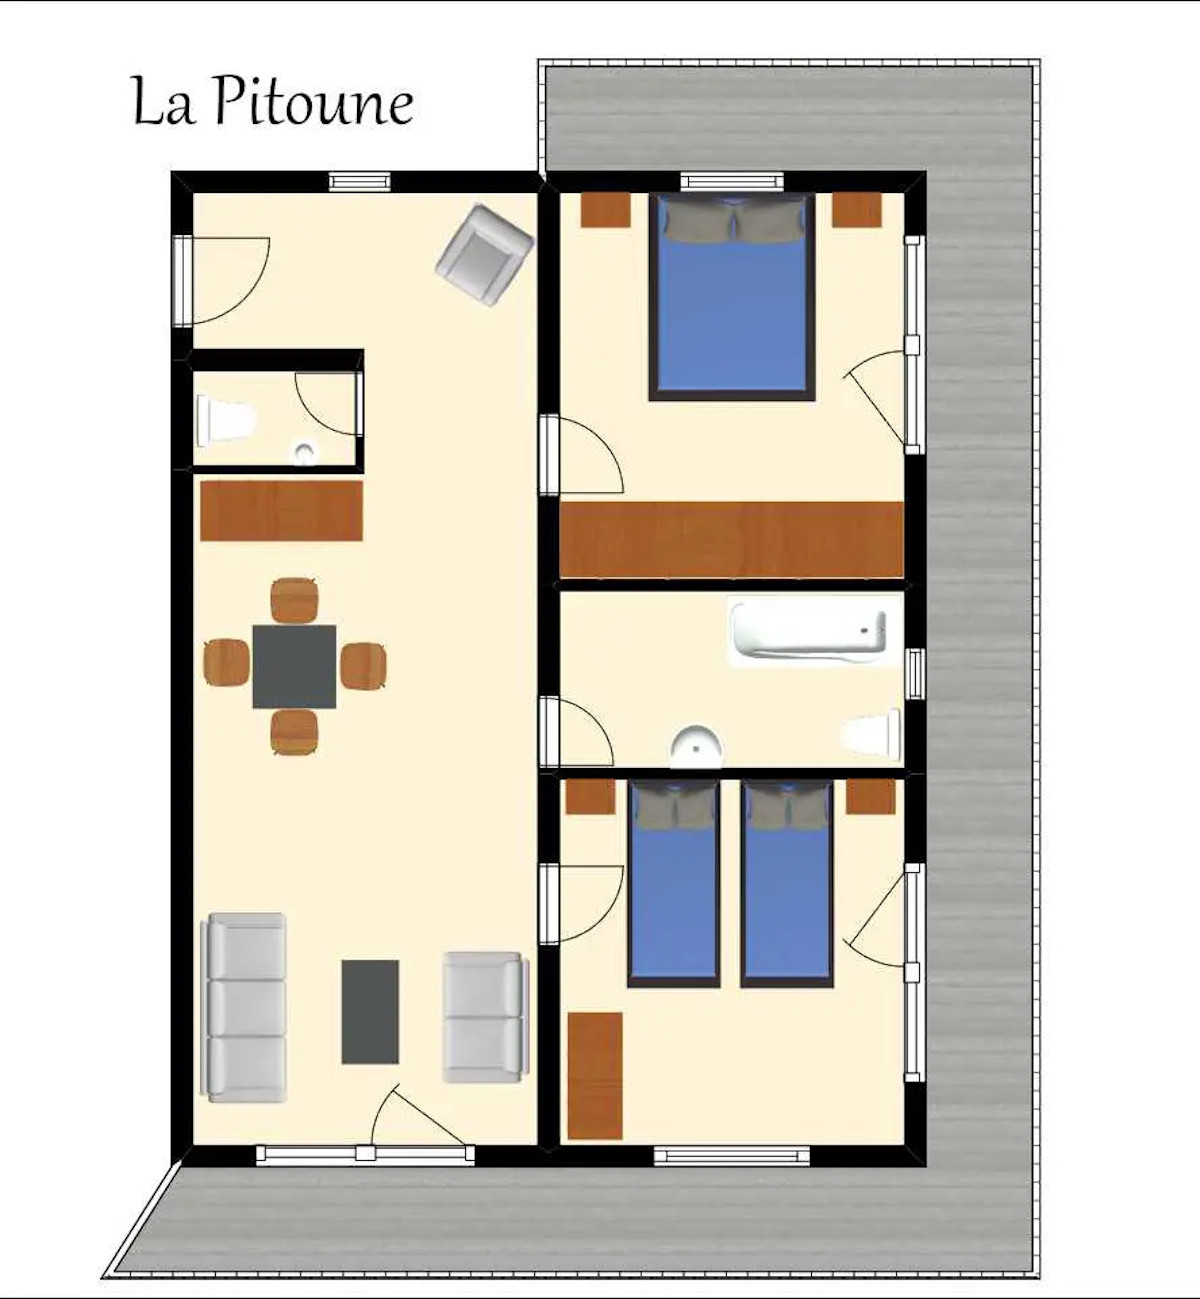 Hôtel Schatzi - La Pitoune